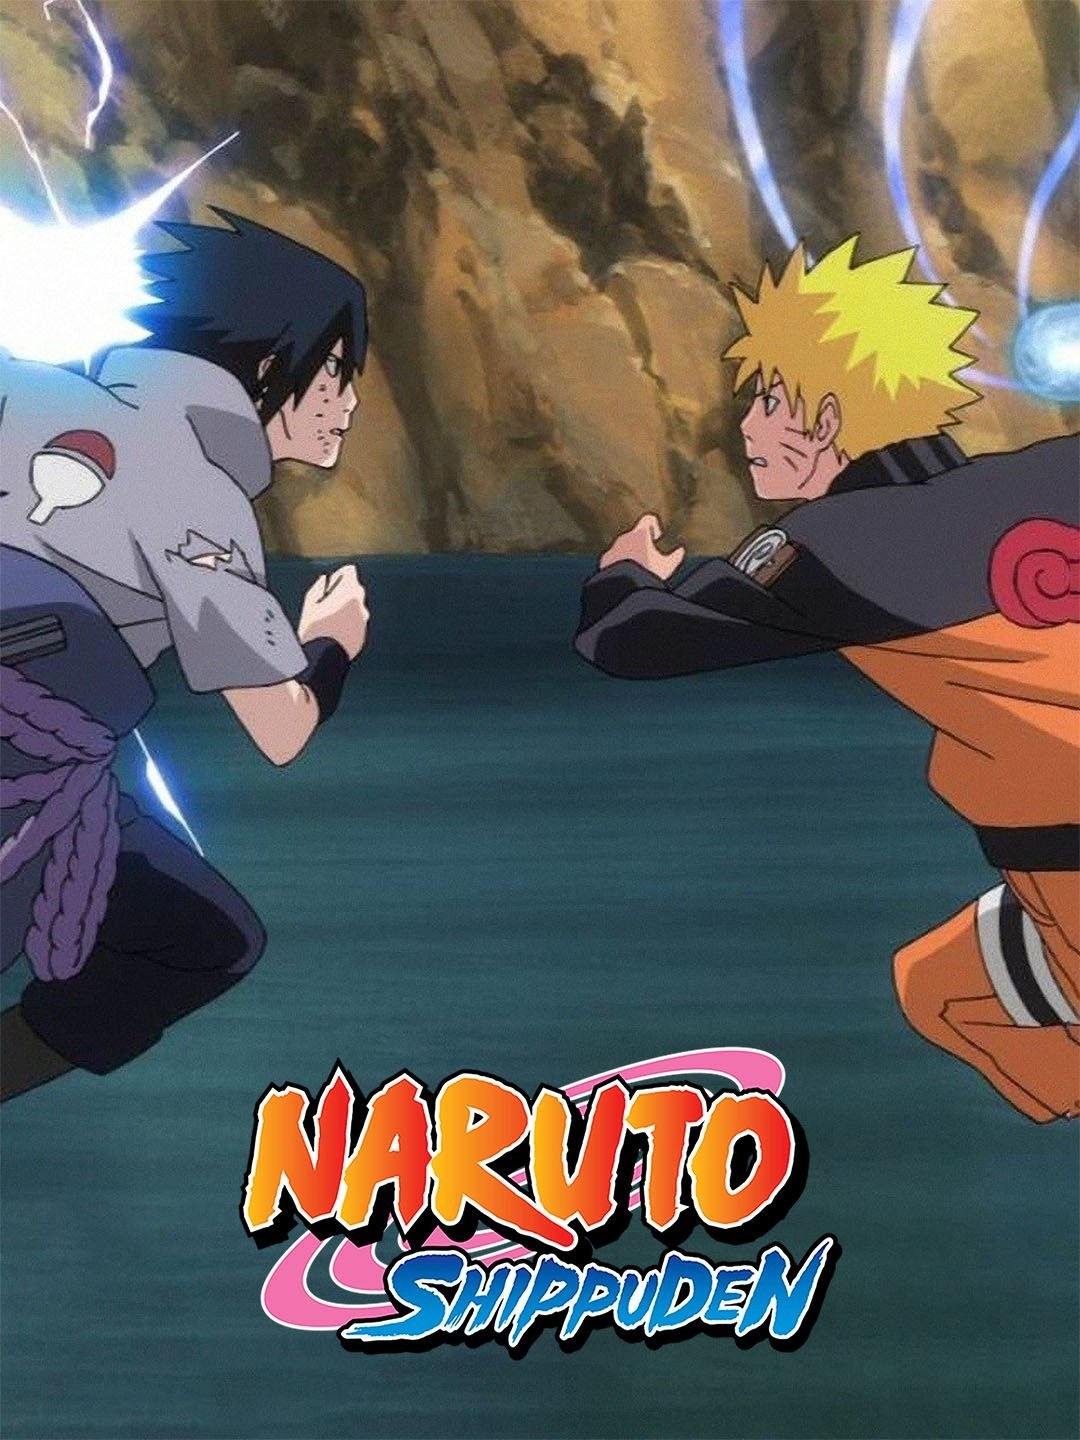 Naruto: Shippuden Season 9